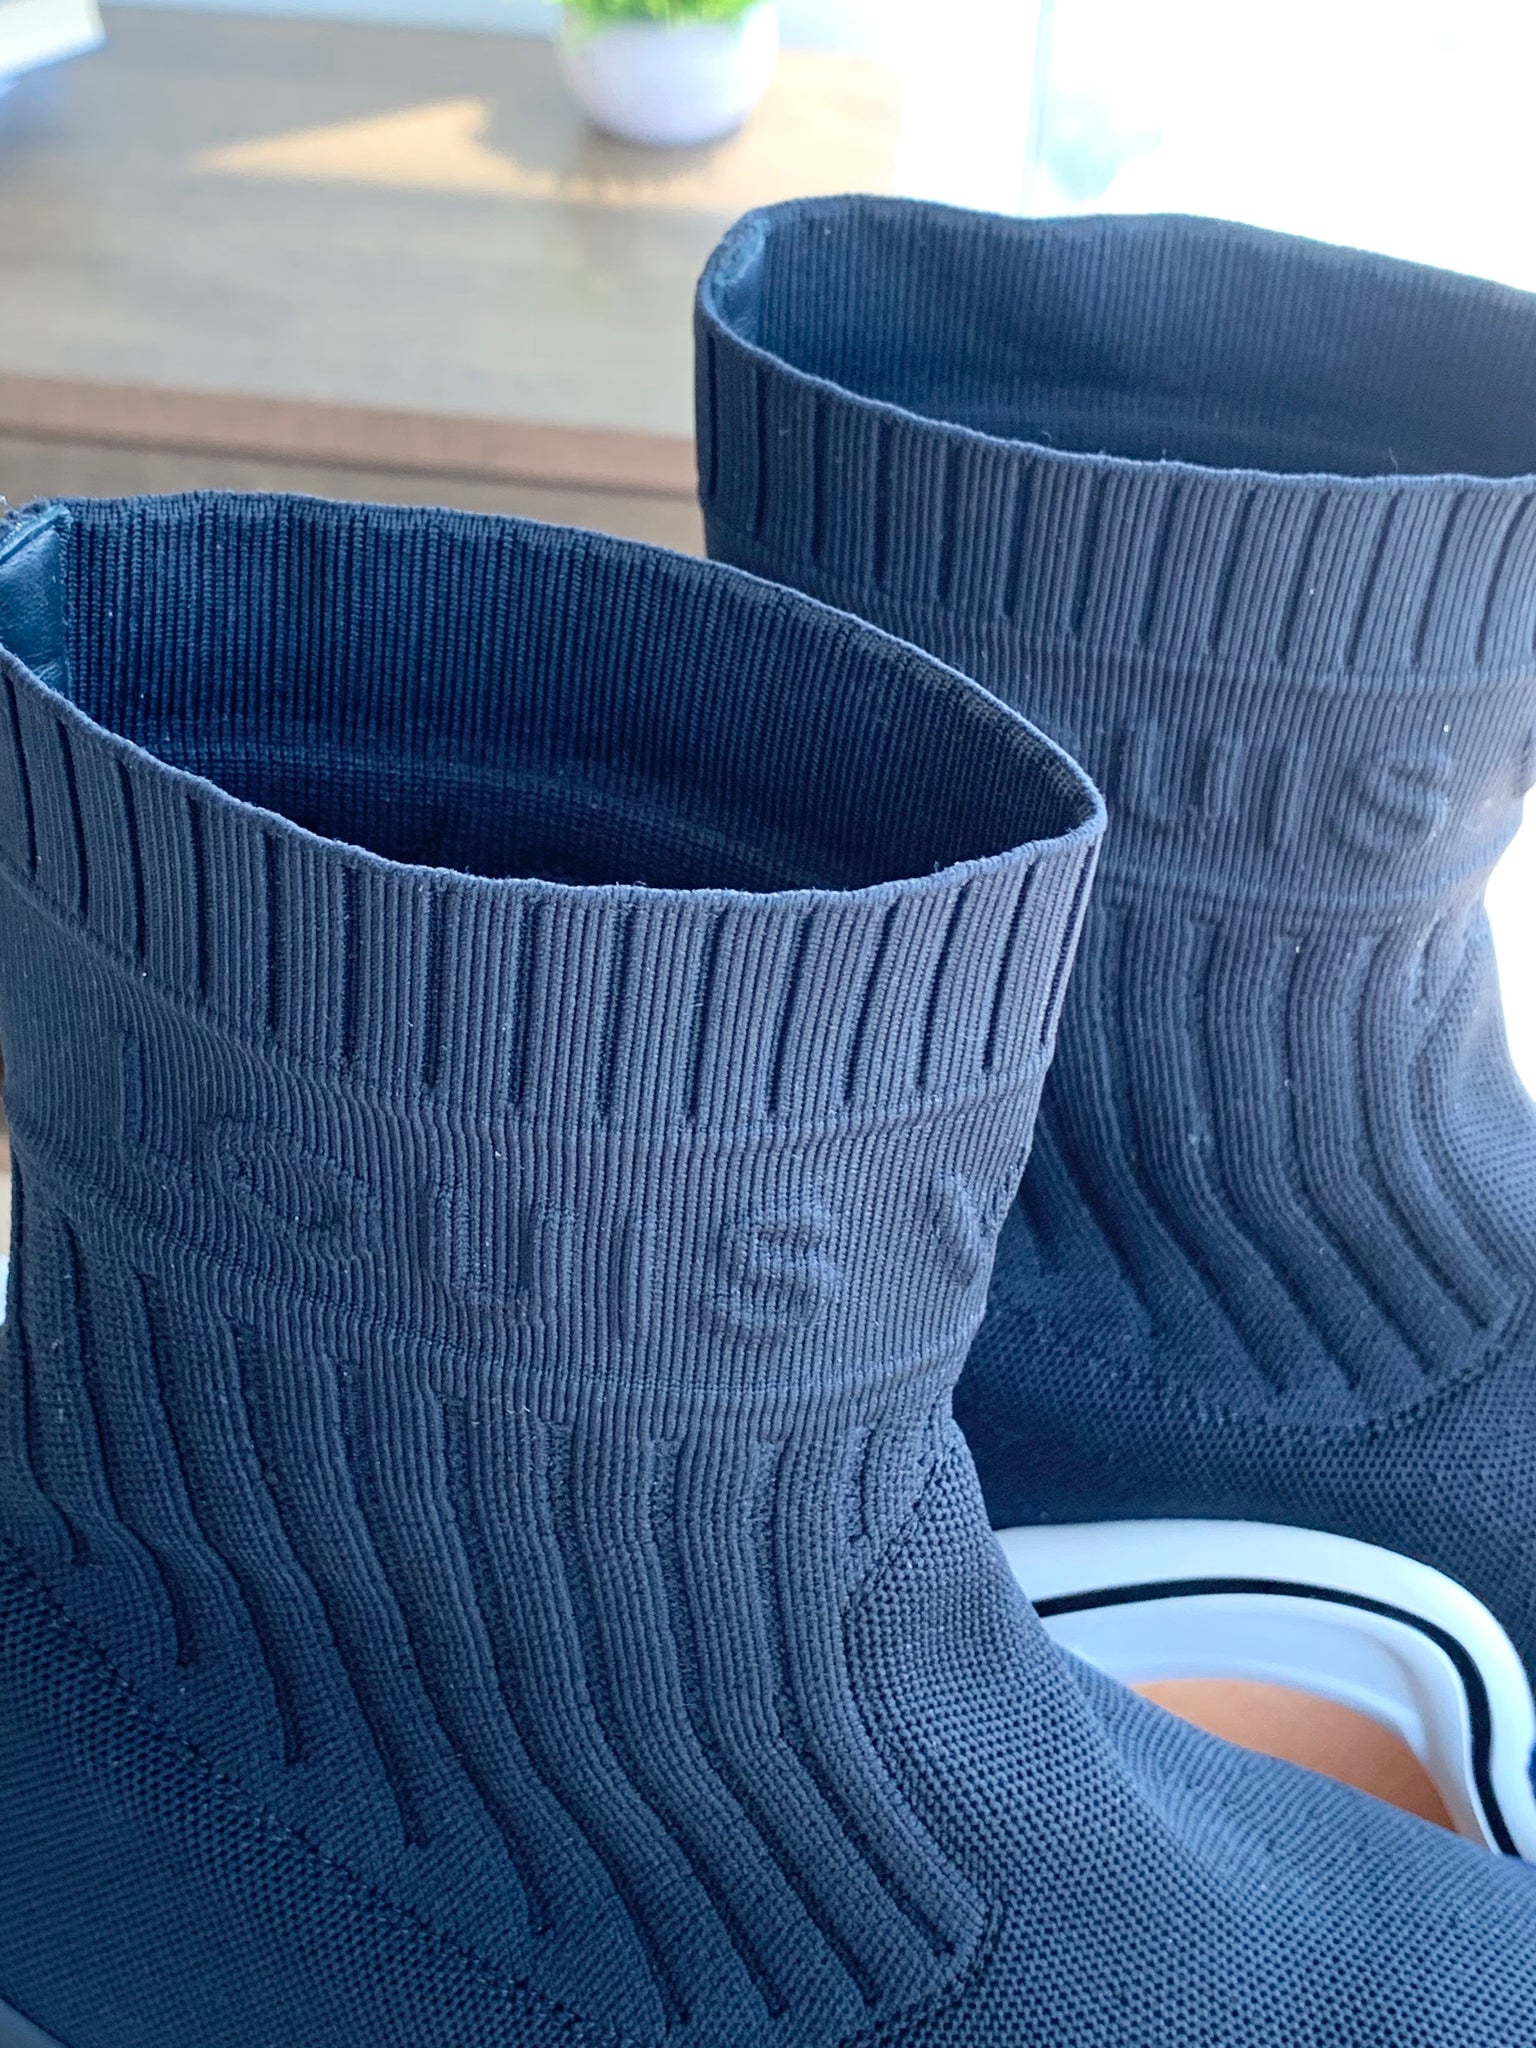 Louis Vuitton LV Archlight Sneaker Boot - size 36 ○ Labellov